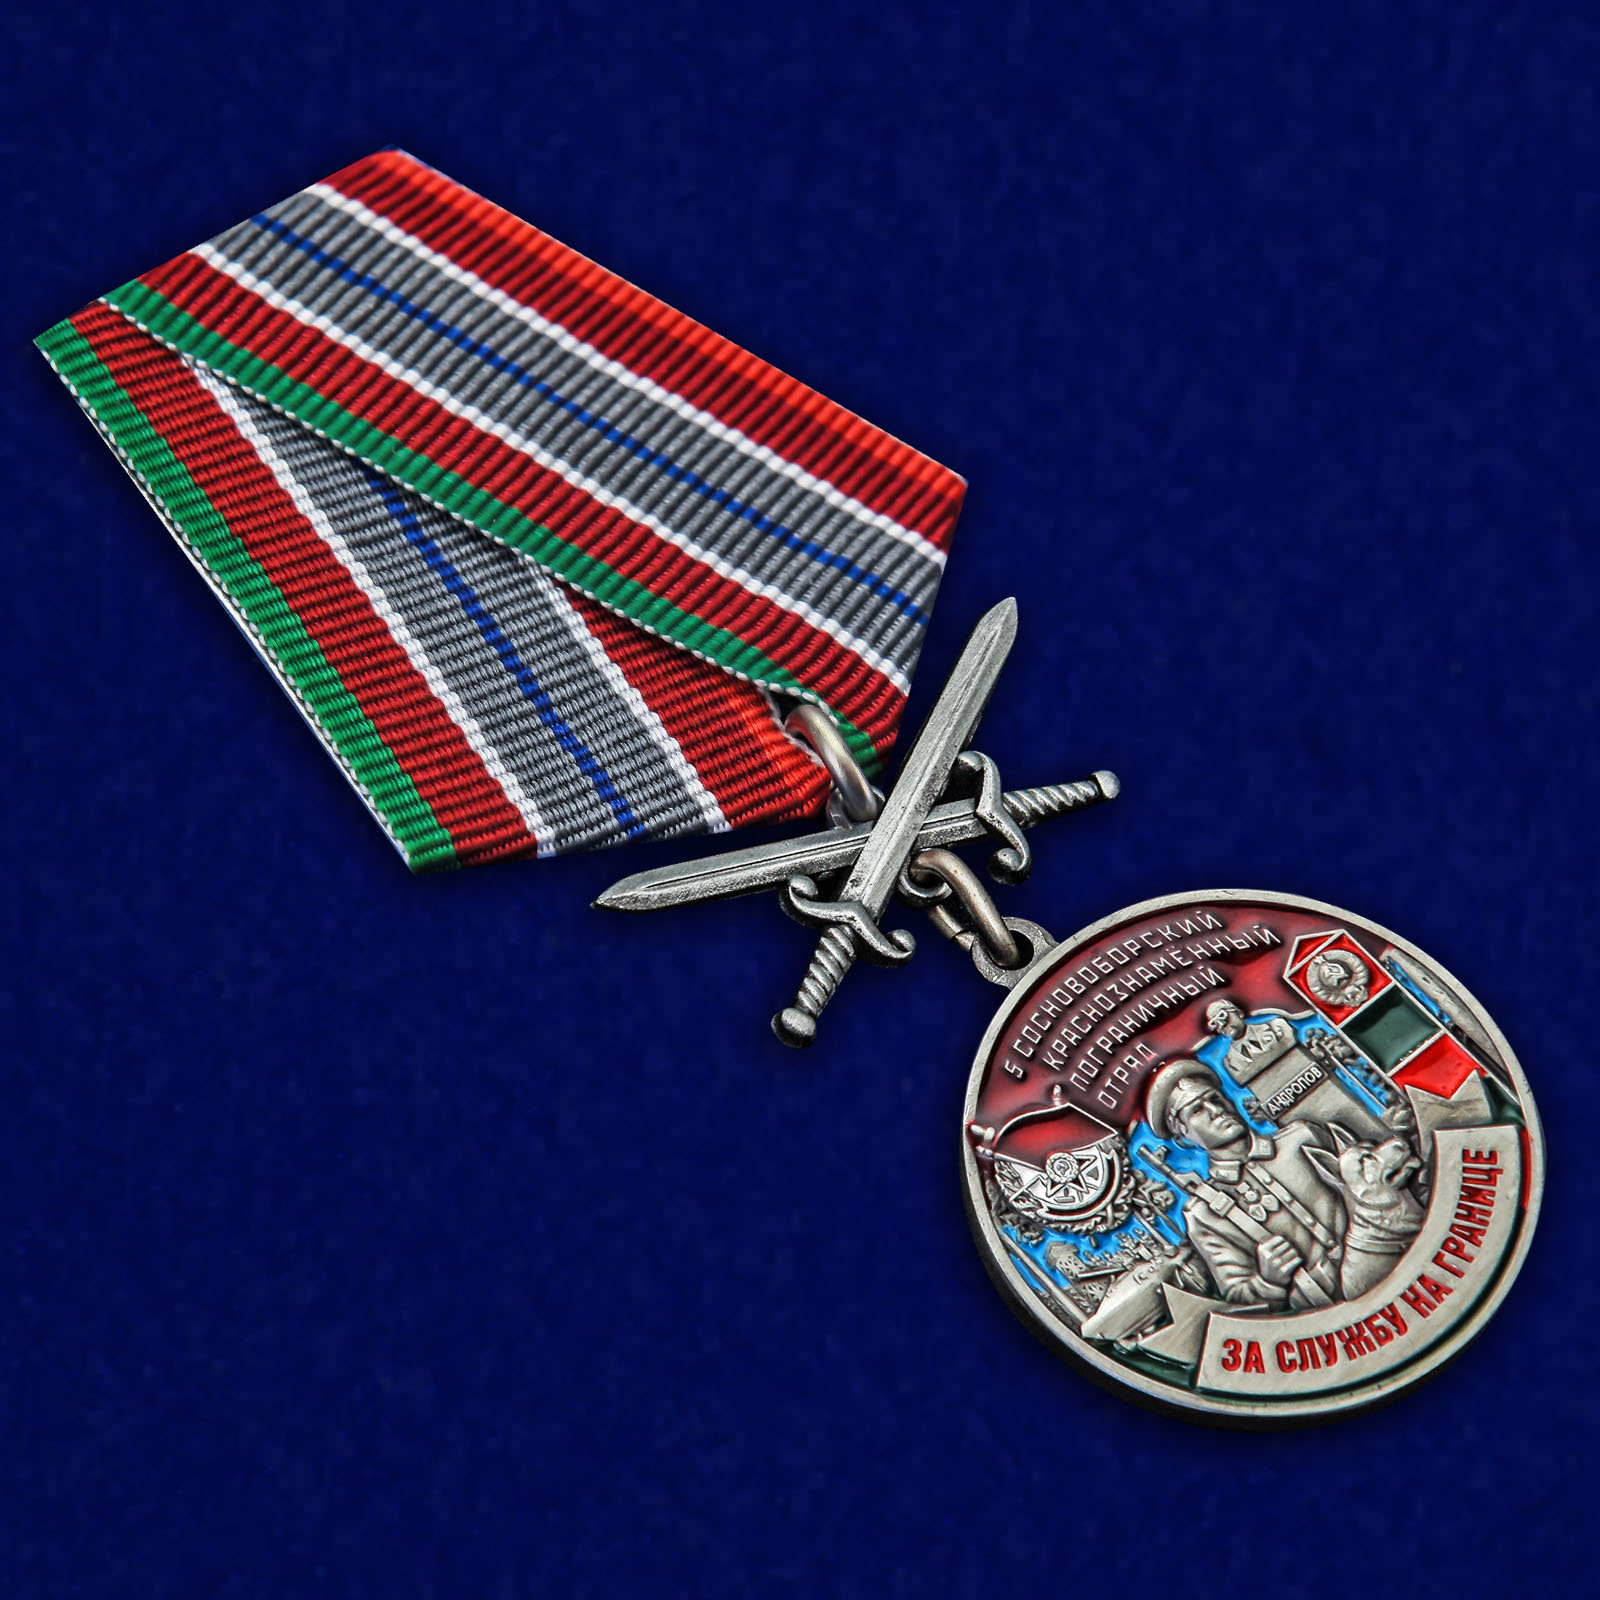 Купить медаль "За службу в Сосновоборском пограничном отряде"